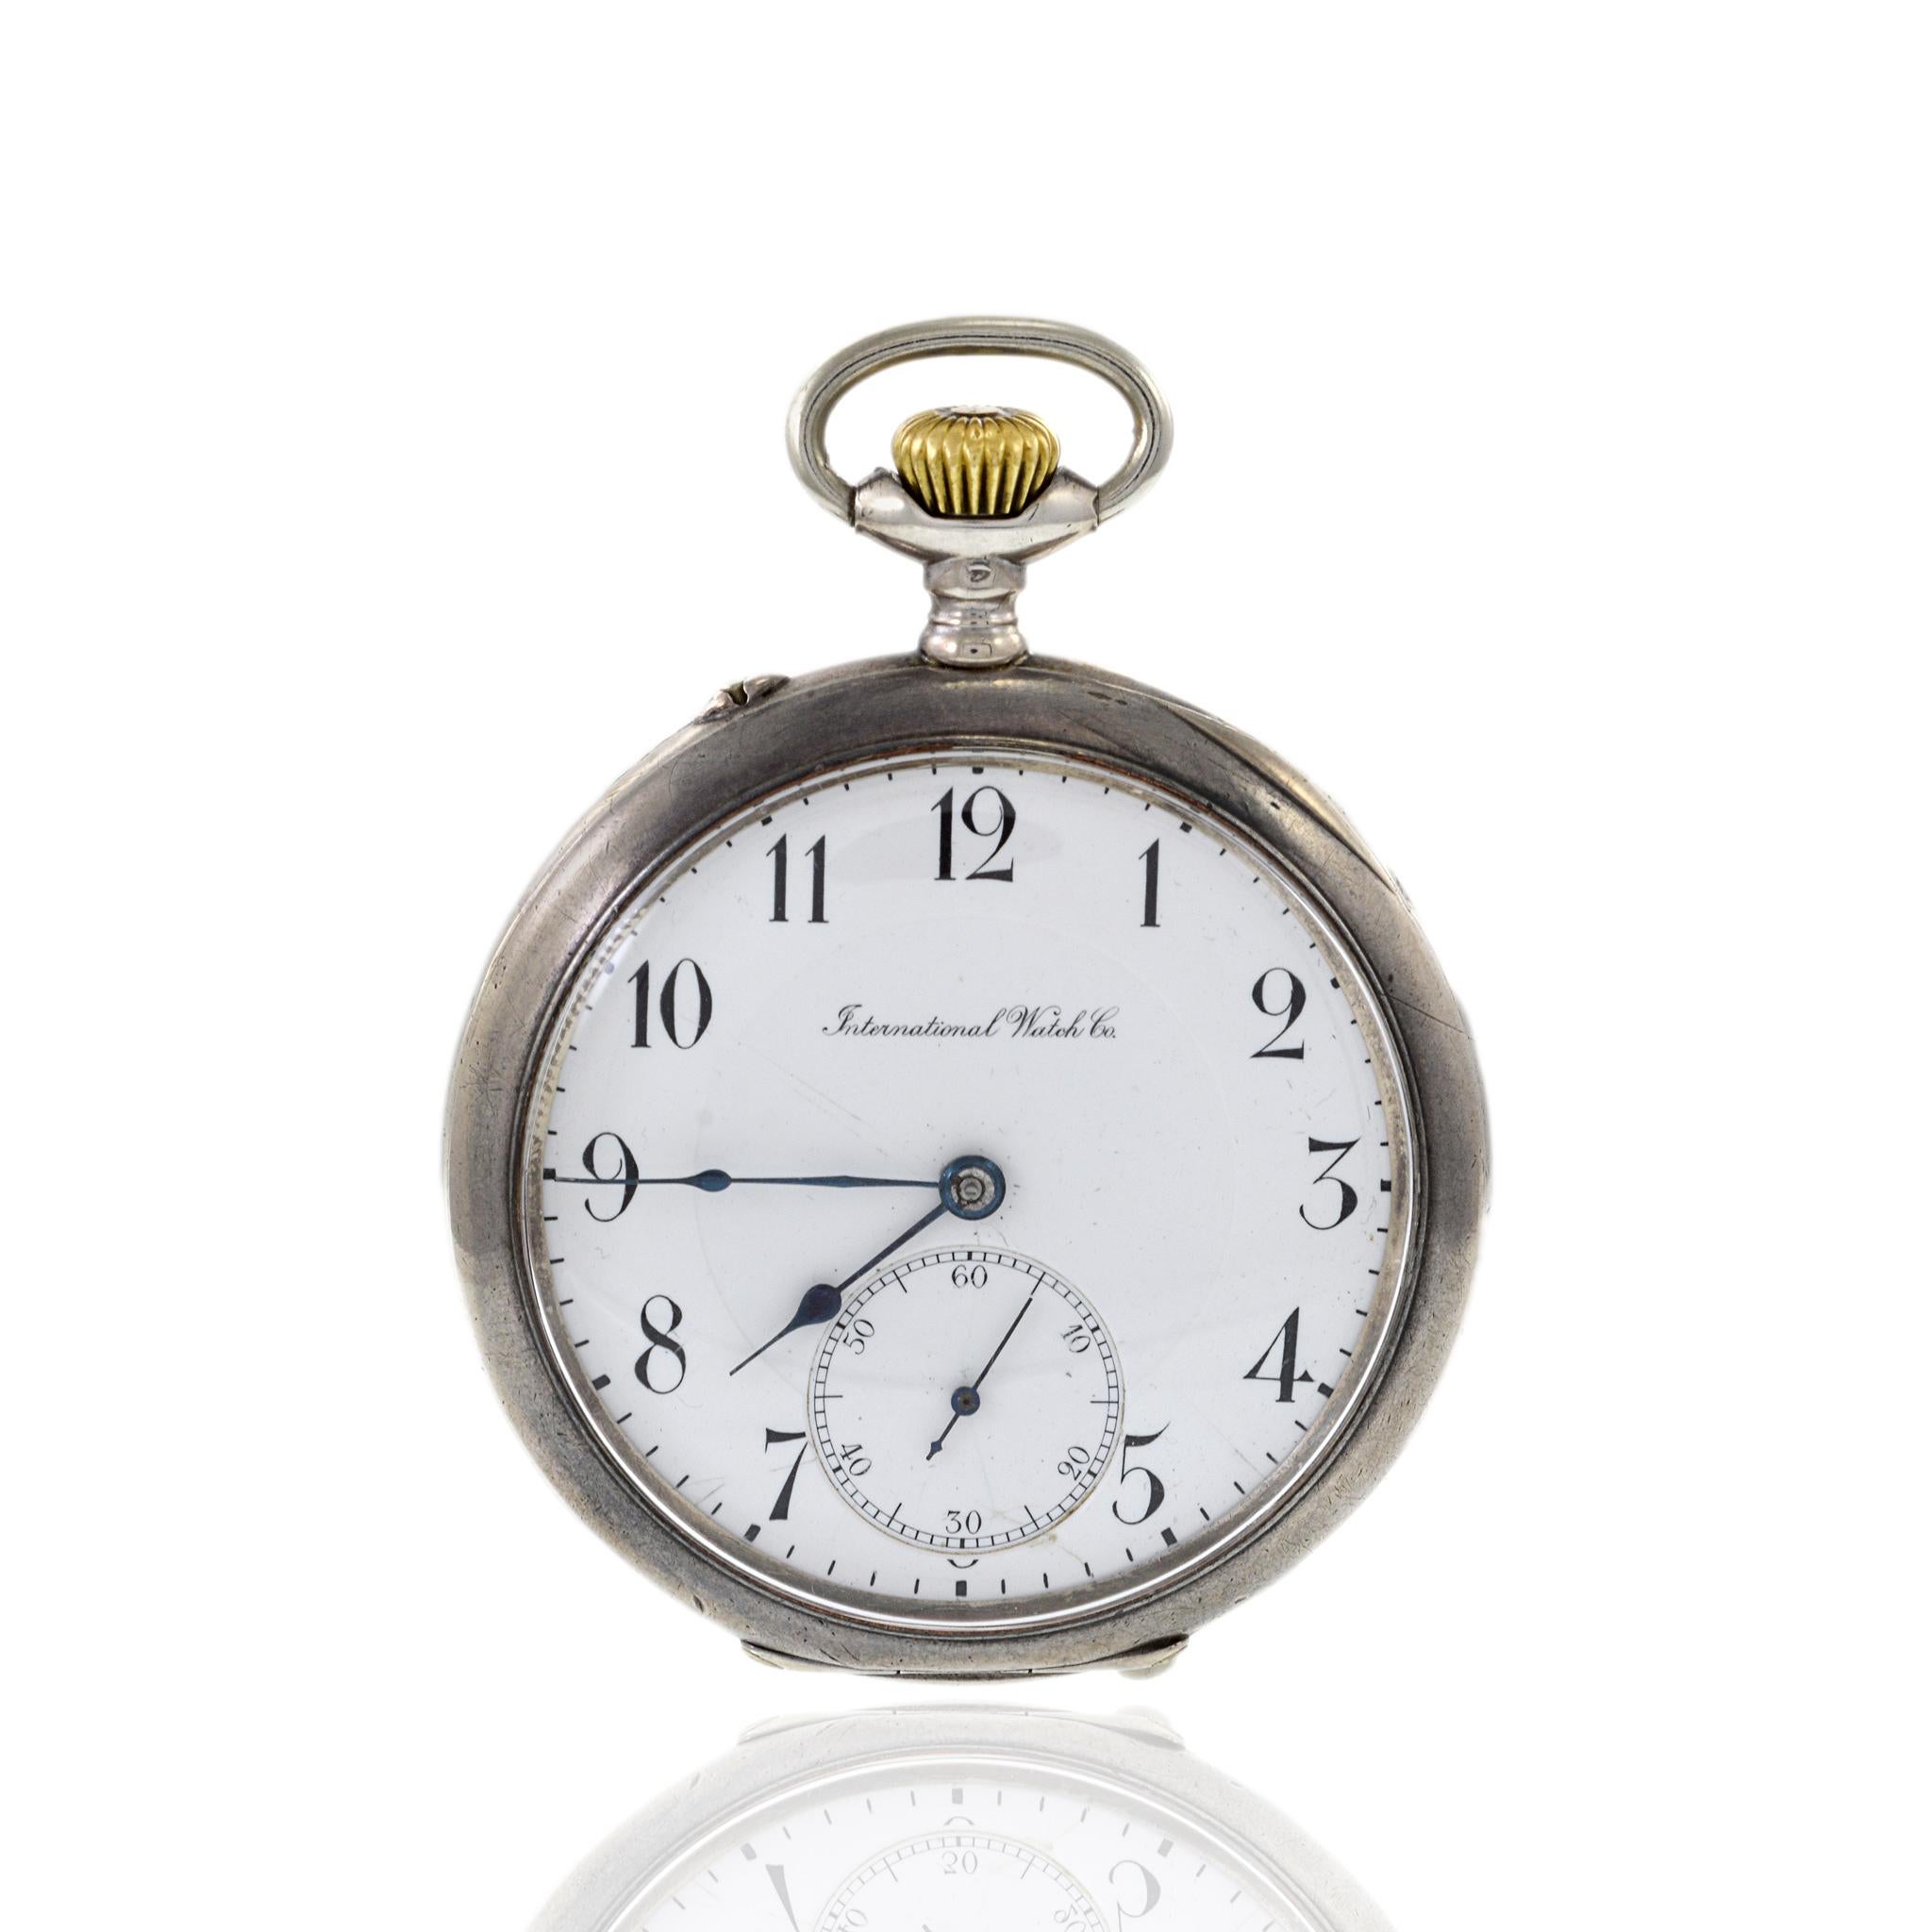 Voici une pièce exquise de l'histoire de l'horlogerie, la montre de poche IWC de l'année 1915. Ce garde-temps intemporel est doté d'un boîtier en argent 800 de 52 mm, reflétant le savoir-faire et l'élégance du début du XXe siècle. Cette montre a été